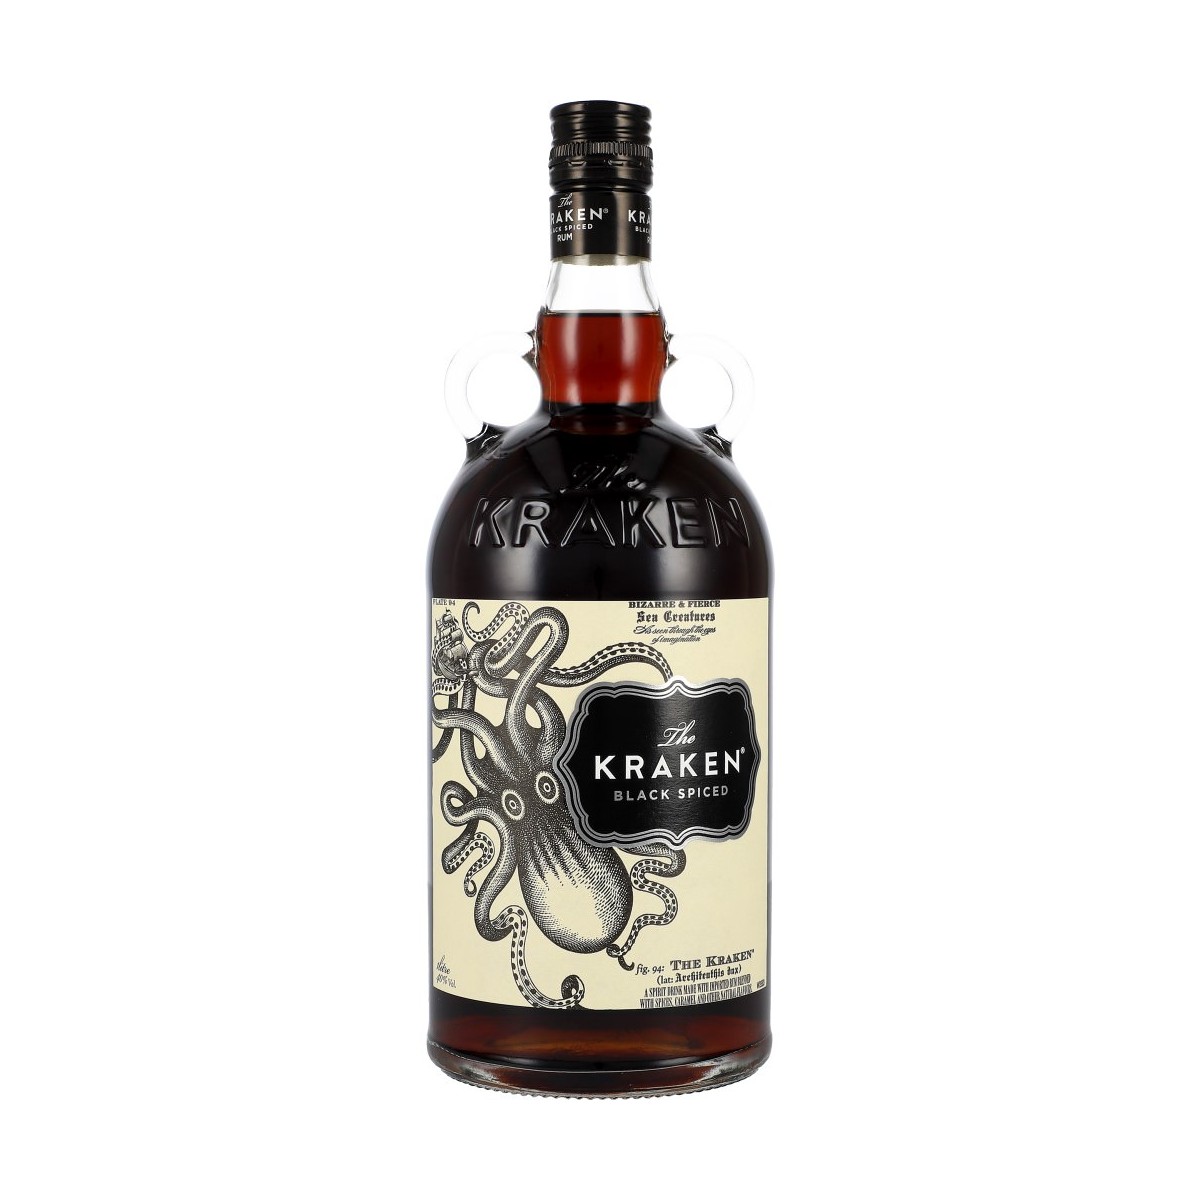 The Kraken Black Spiced Rum 40% 100cl